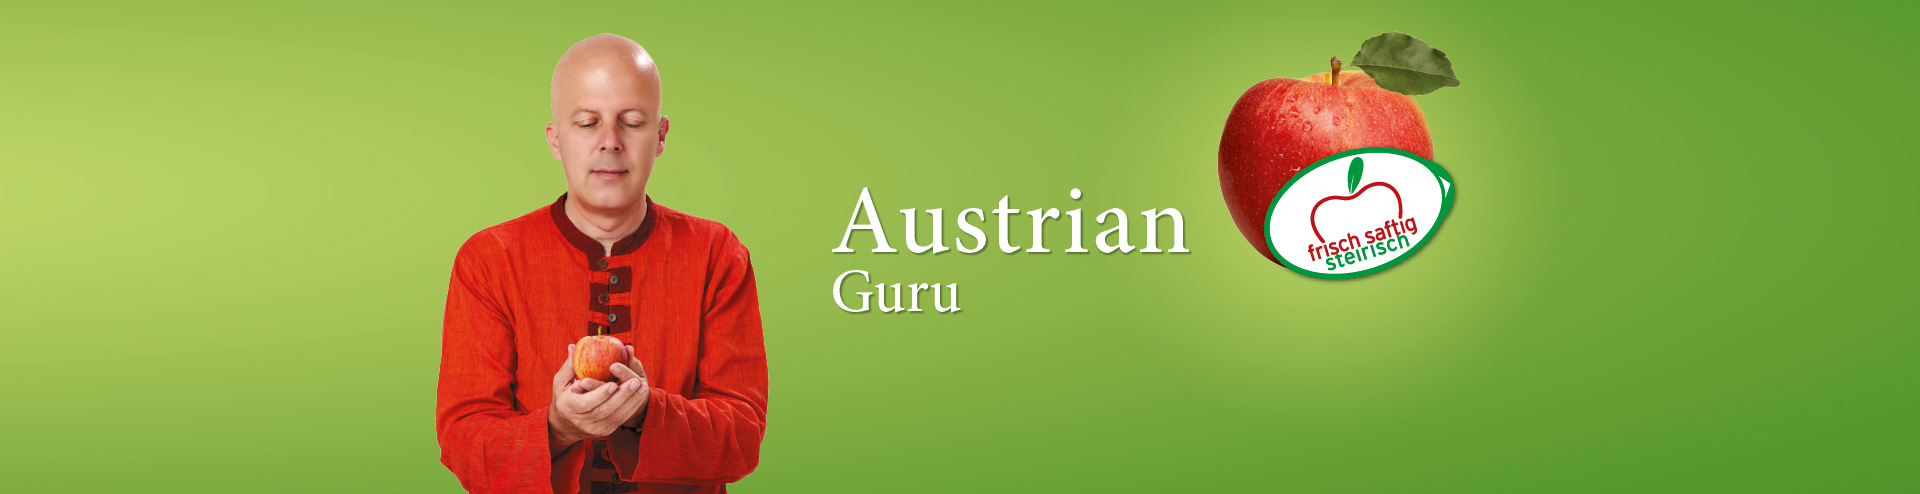 Austrian Guru